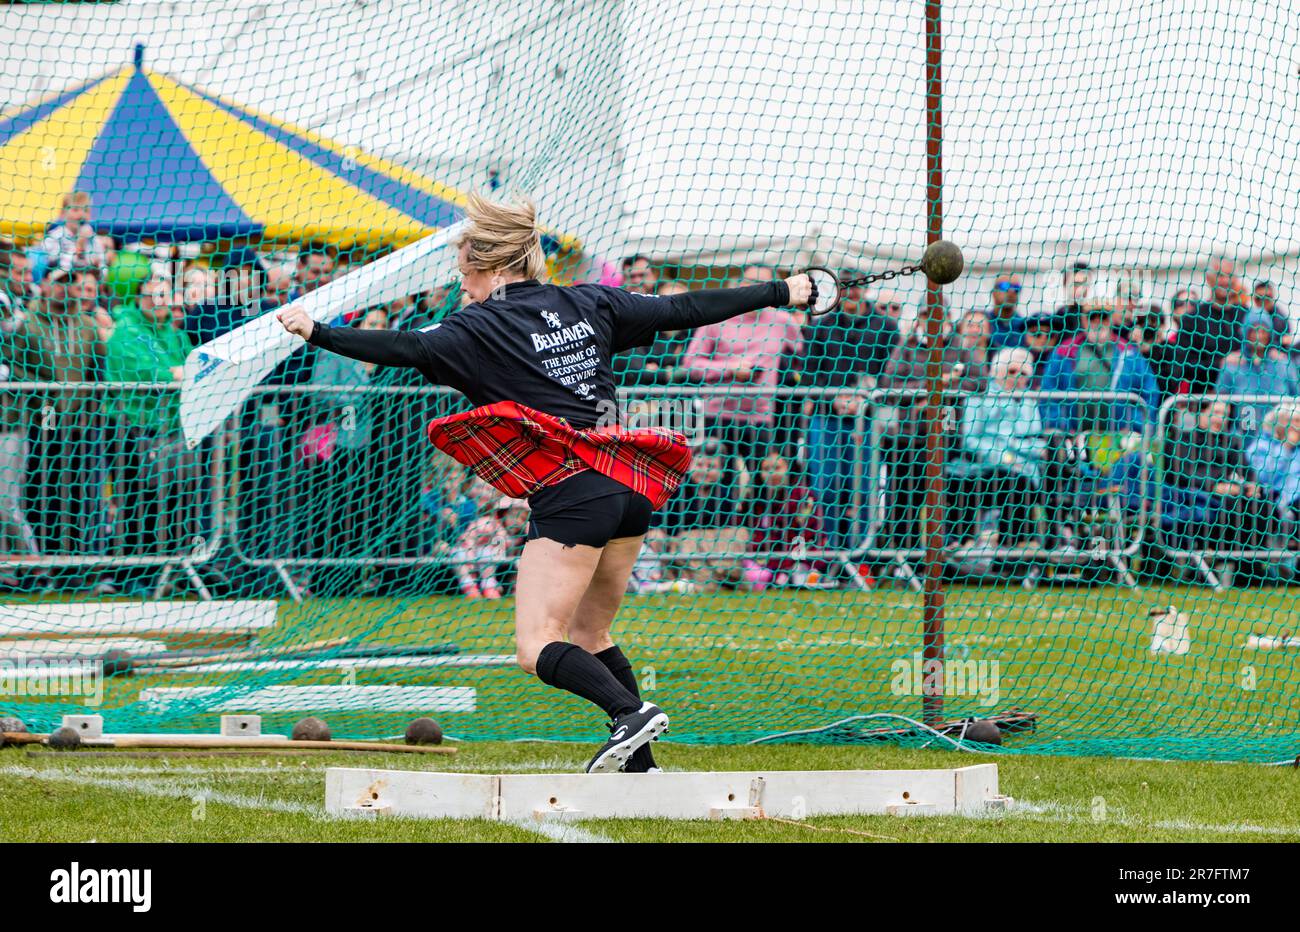 Weibliche Wettkämpferin bei einem schweren Ball- und Kettenspiel, Highland Games, North Berwick, Schottland, Großbritannien Stockfoto